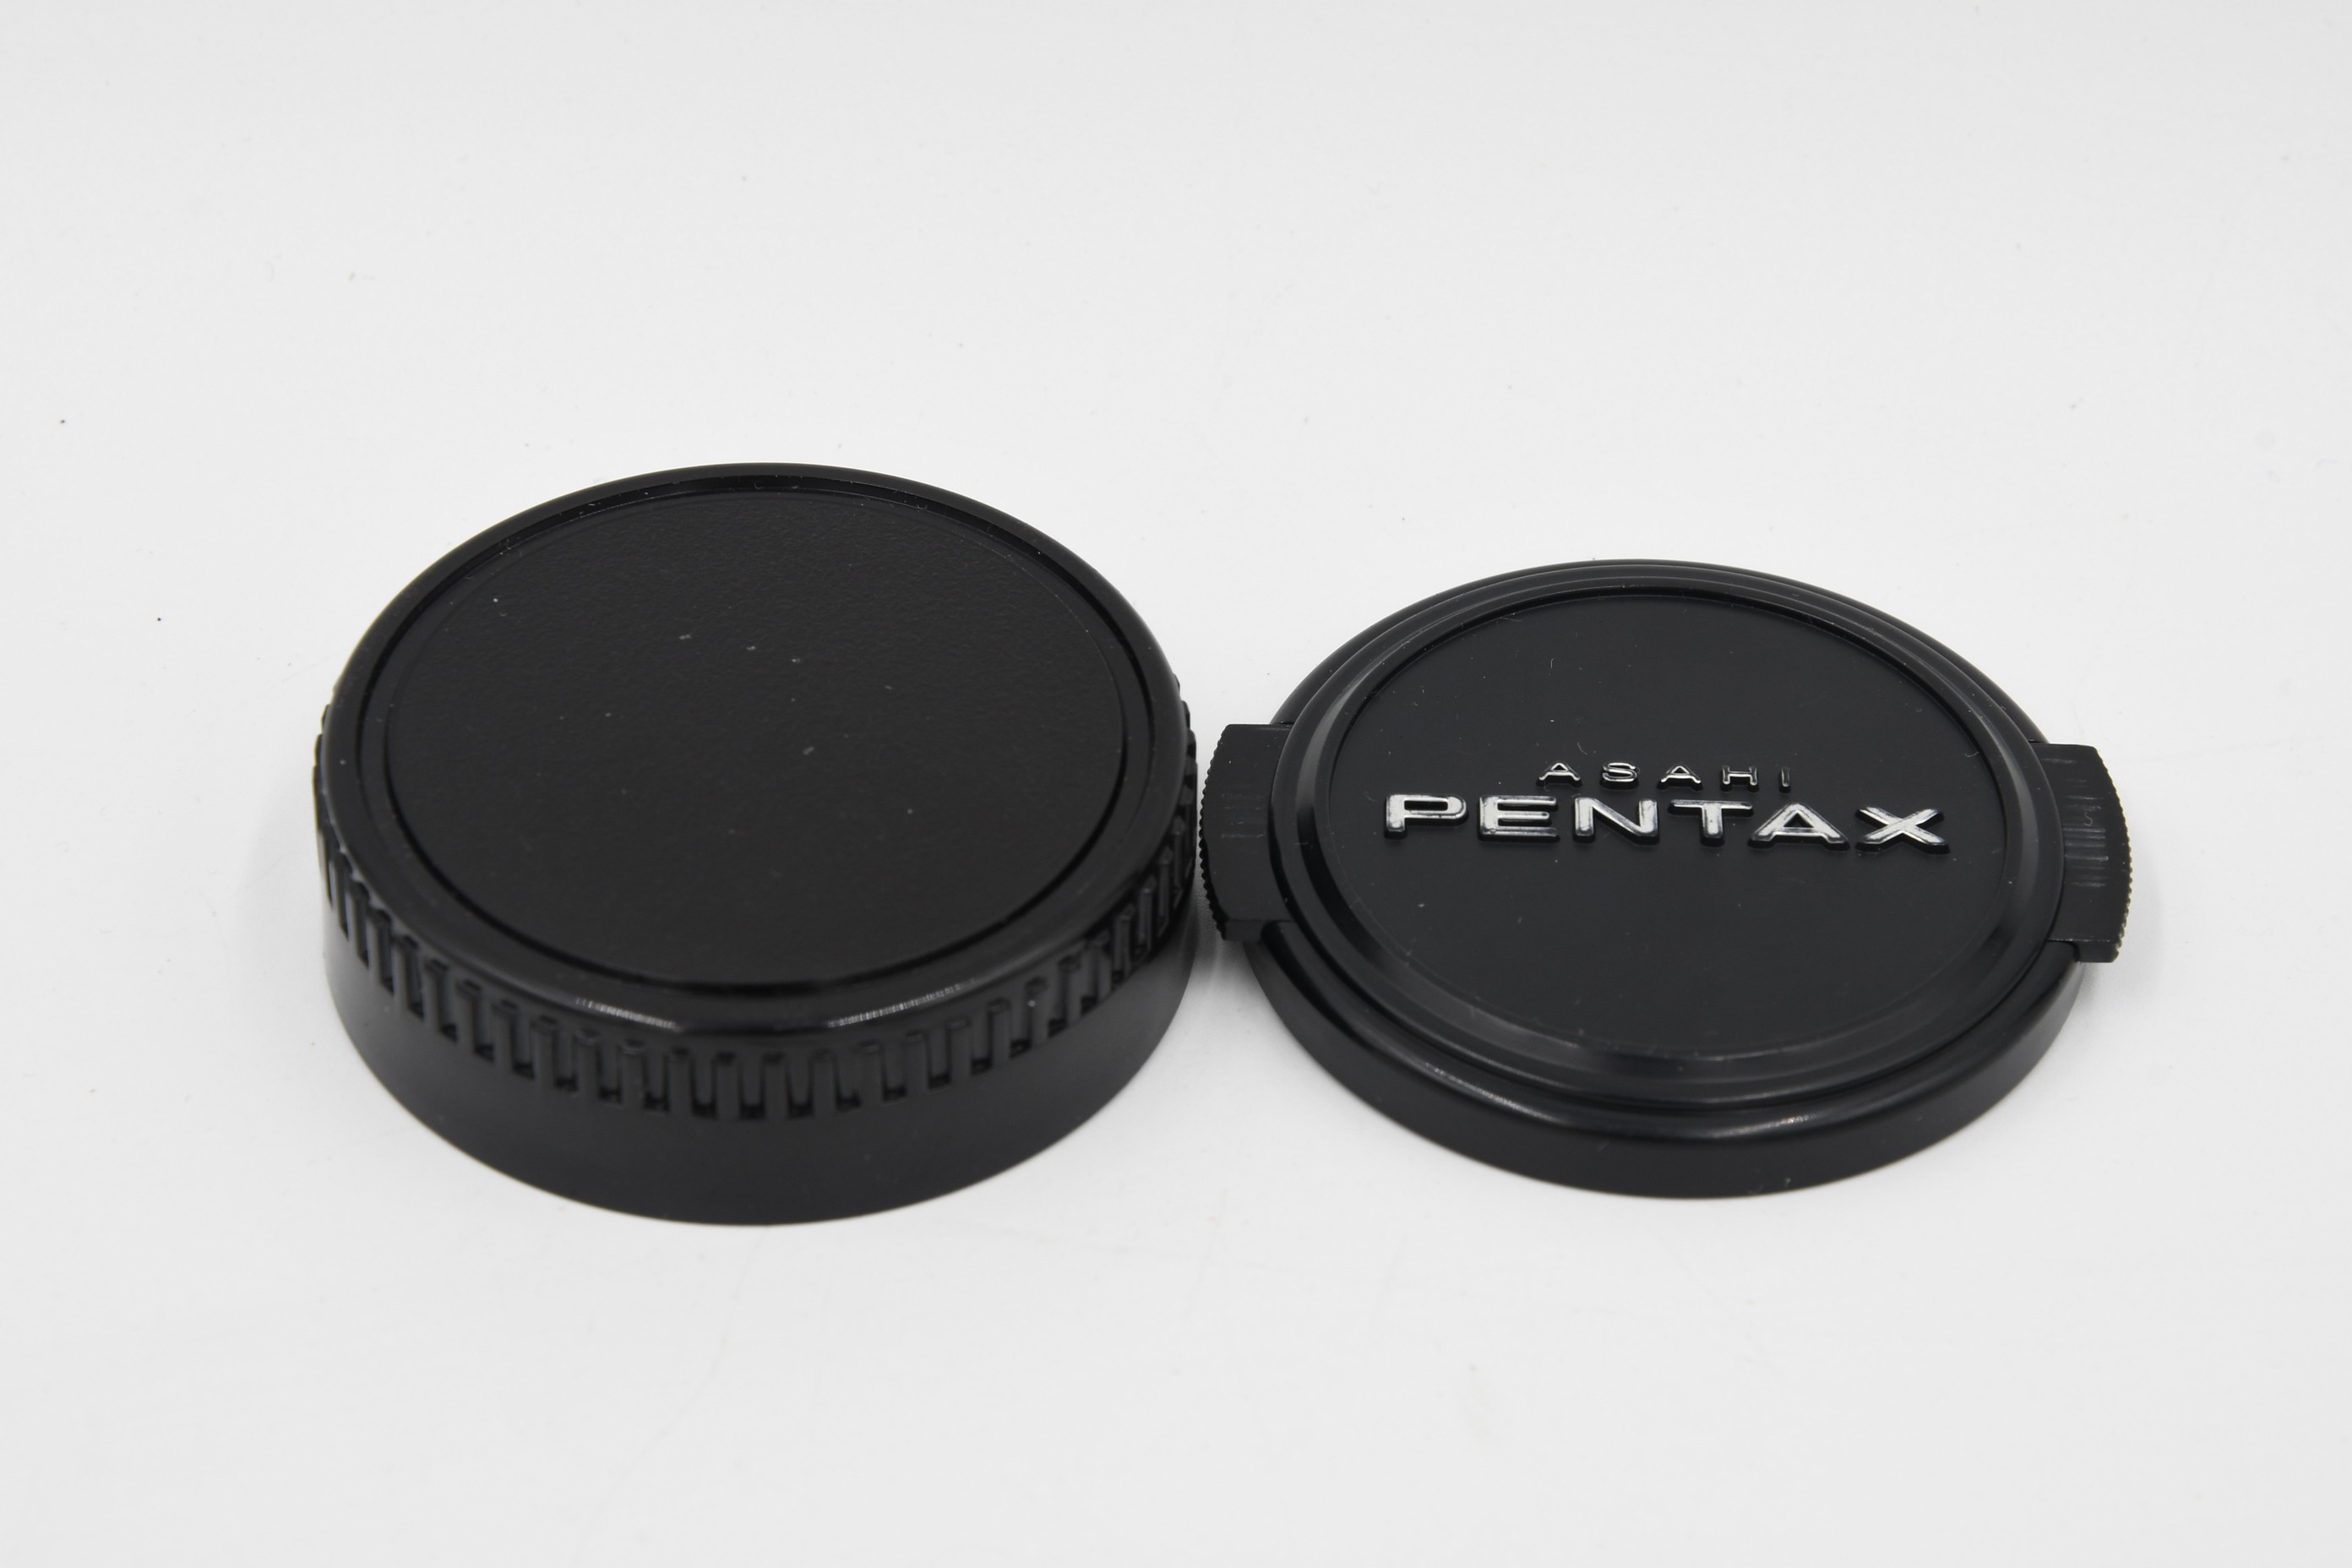 Объектив Pentax «SMC Pentax-M 4/20mm» - полнокадровый сверхширокоугольный ультракомпактный (состояние 5)